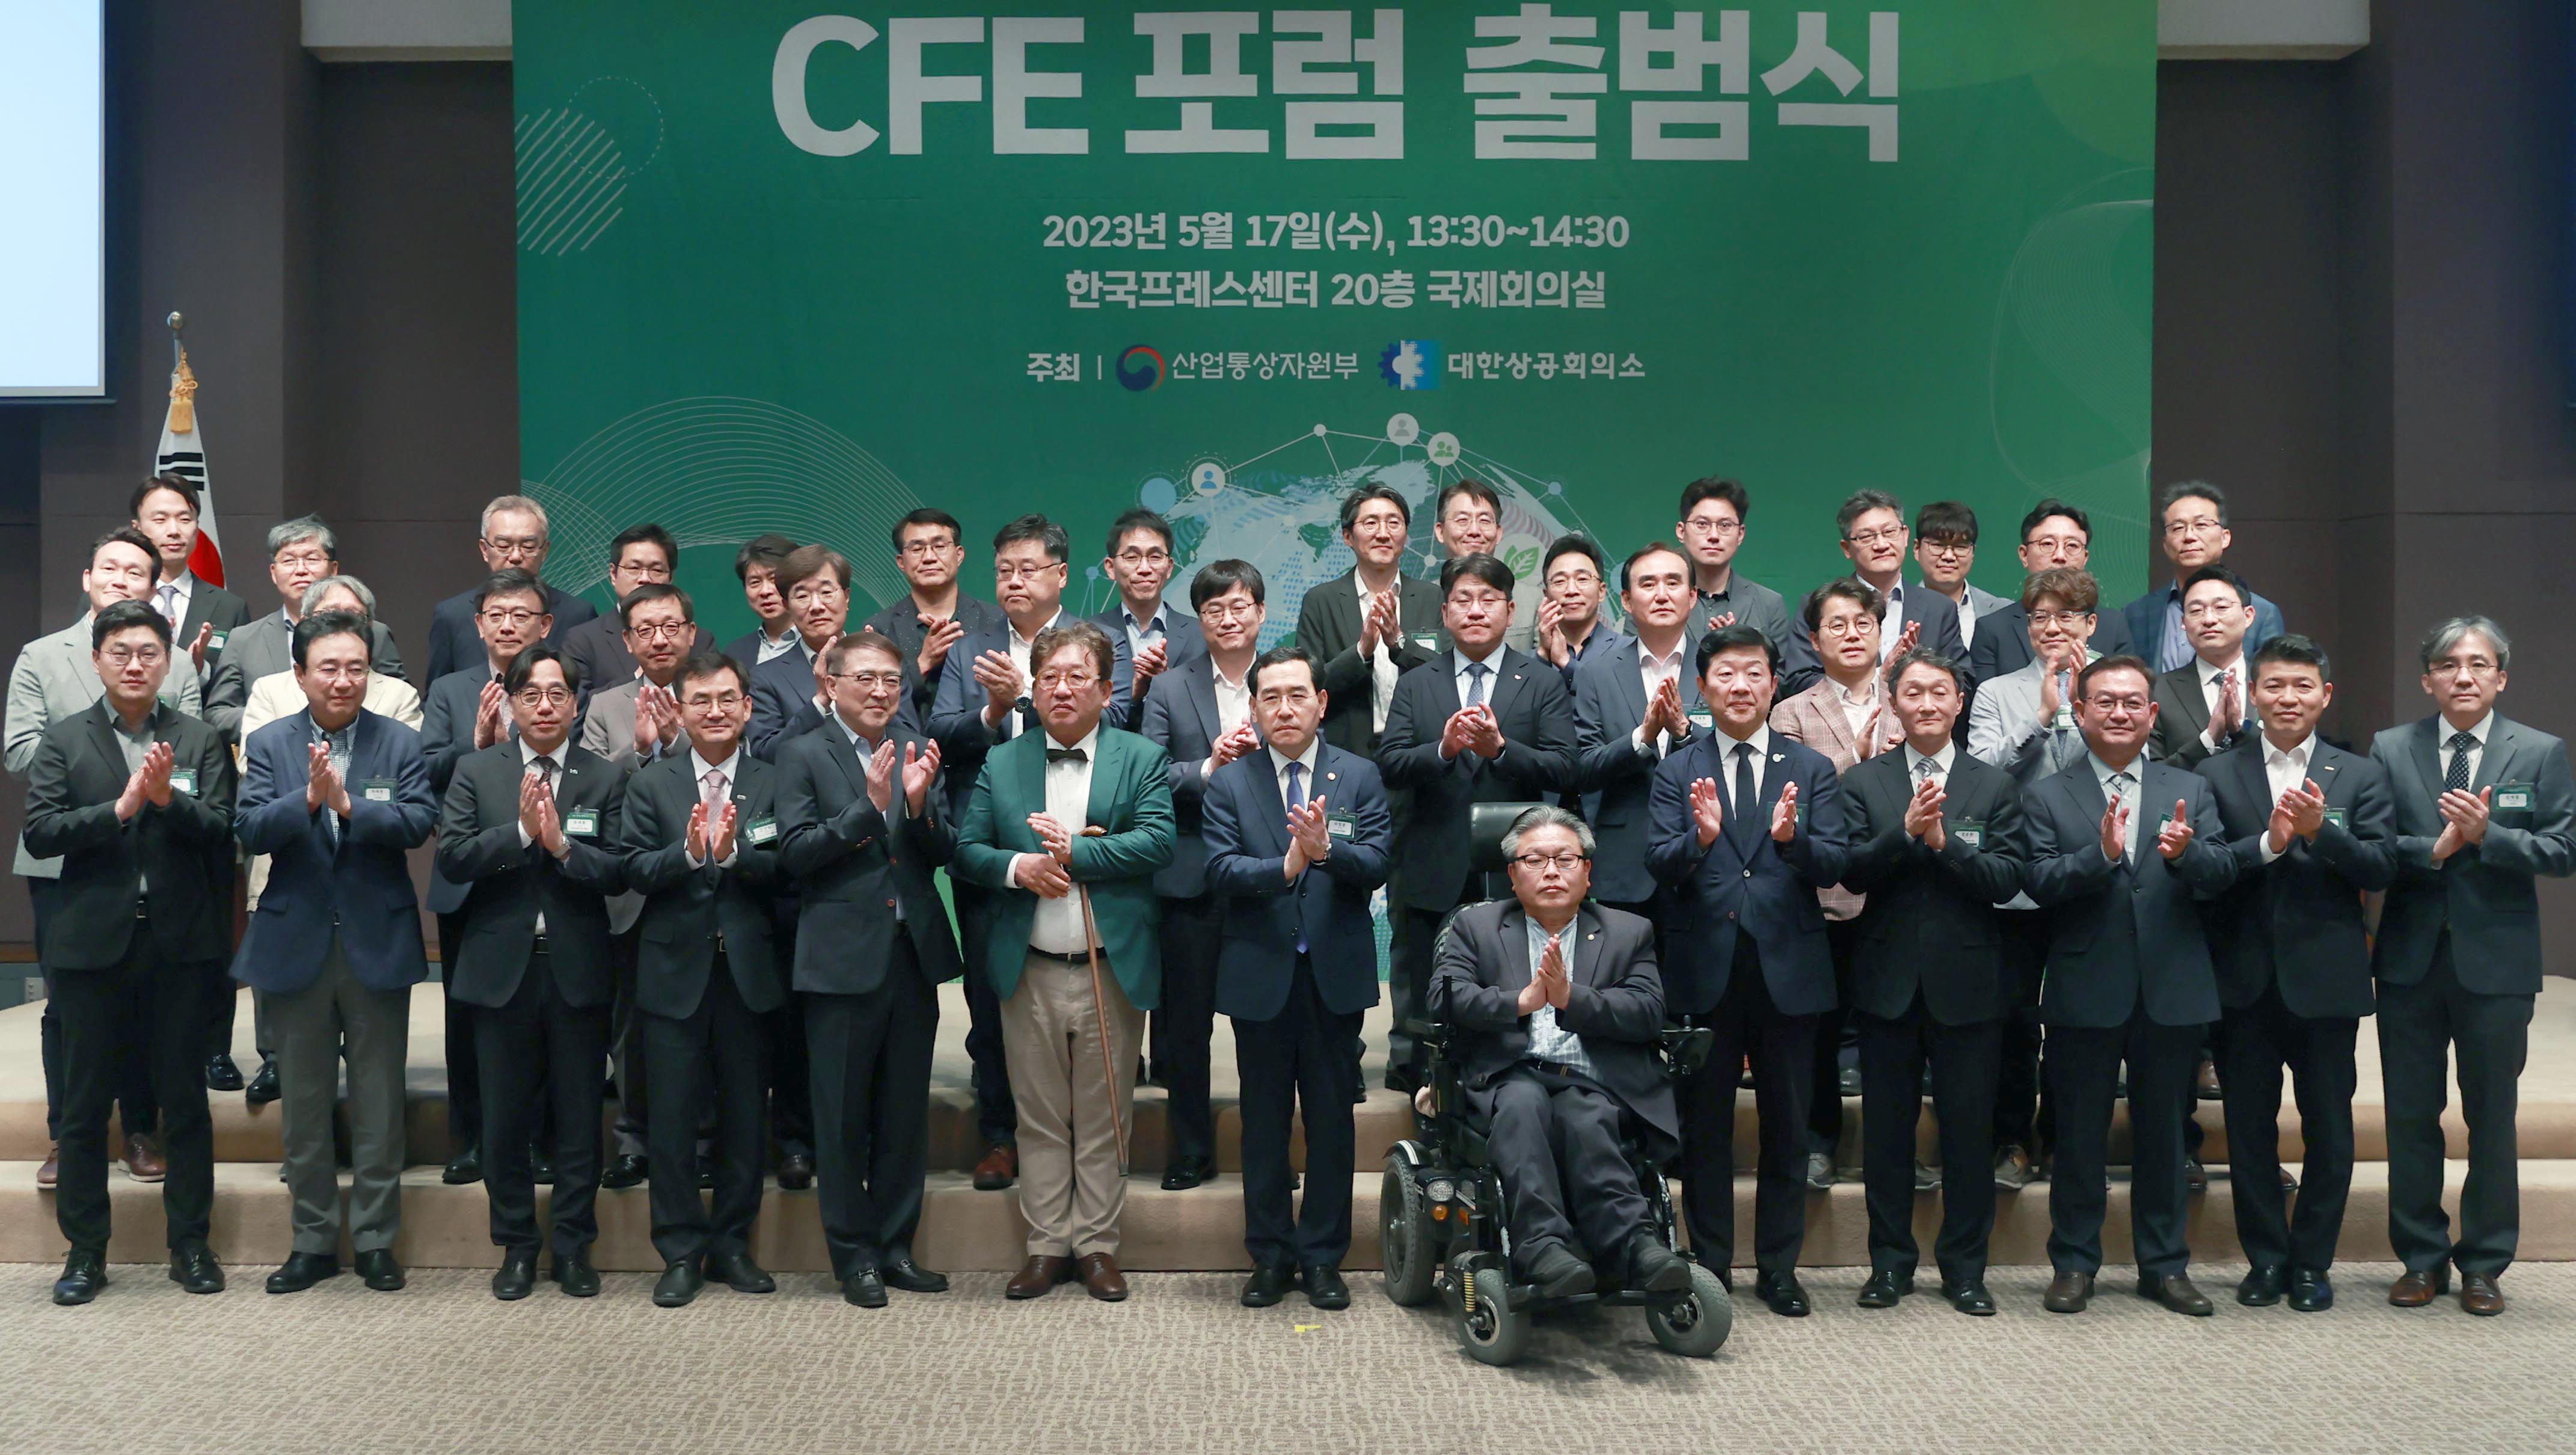 17일 오후, 서울 중구 프레스센터 국제회의실에서 열린 CFE포럼 출범식